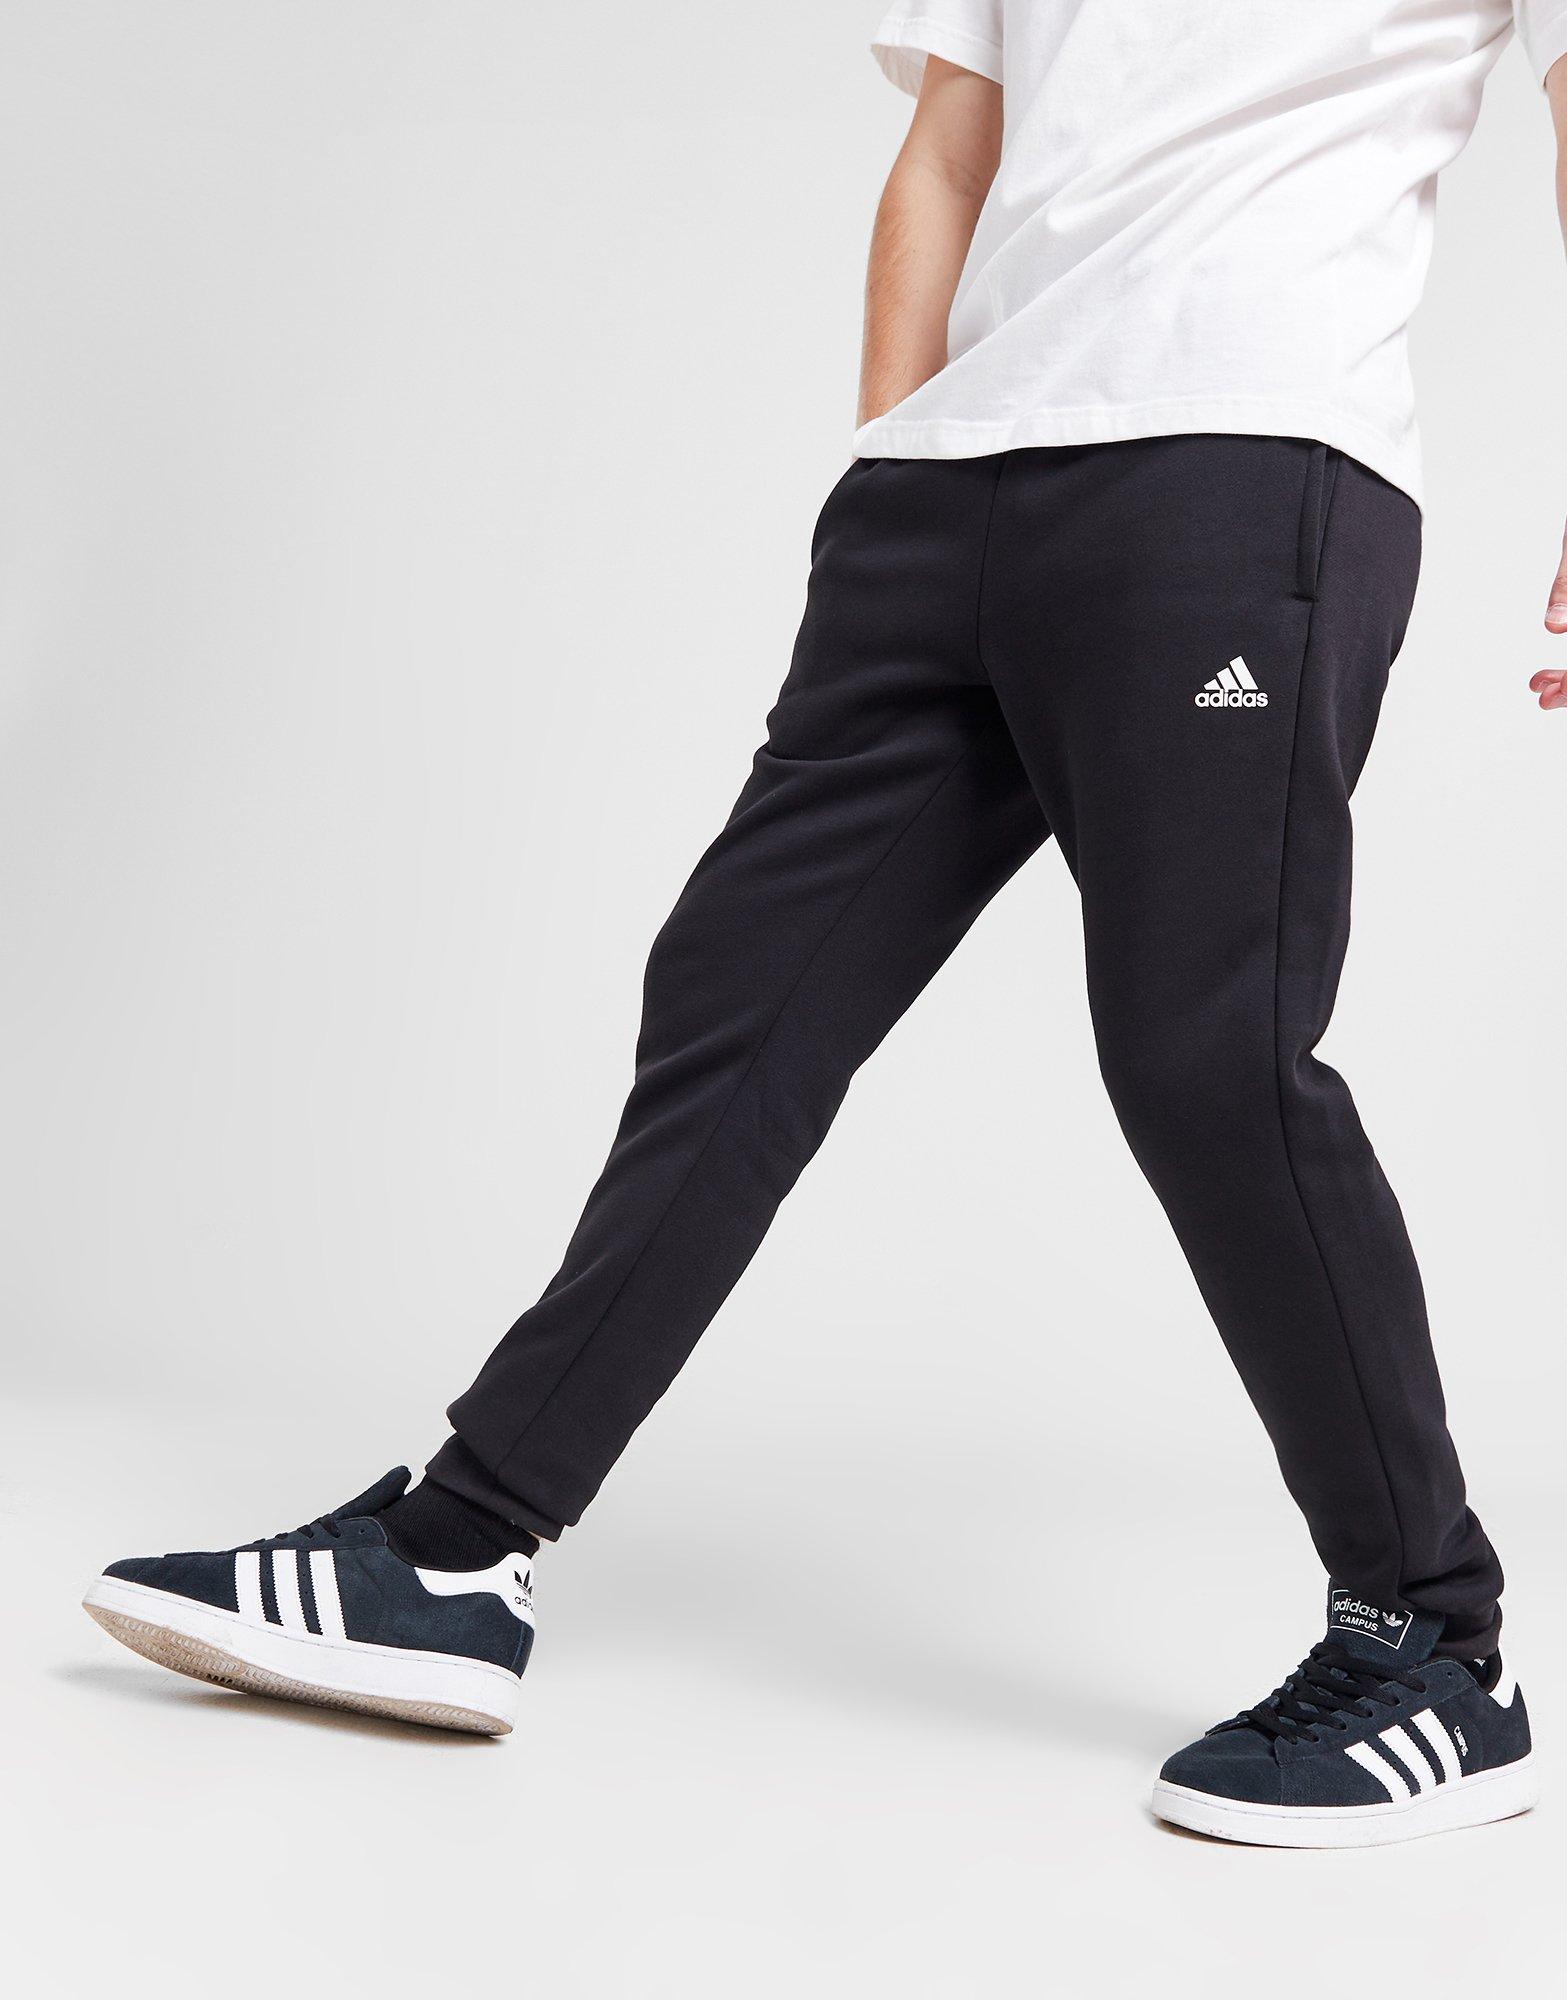 Fila Sport Black Active Pants Size M - 70% off